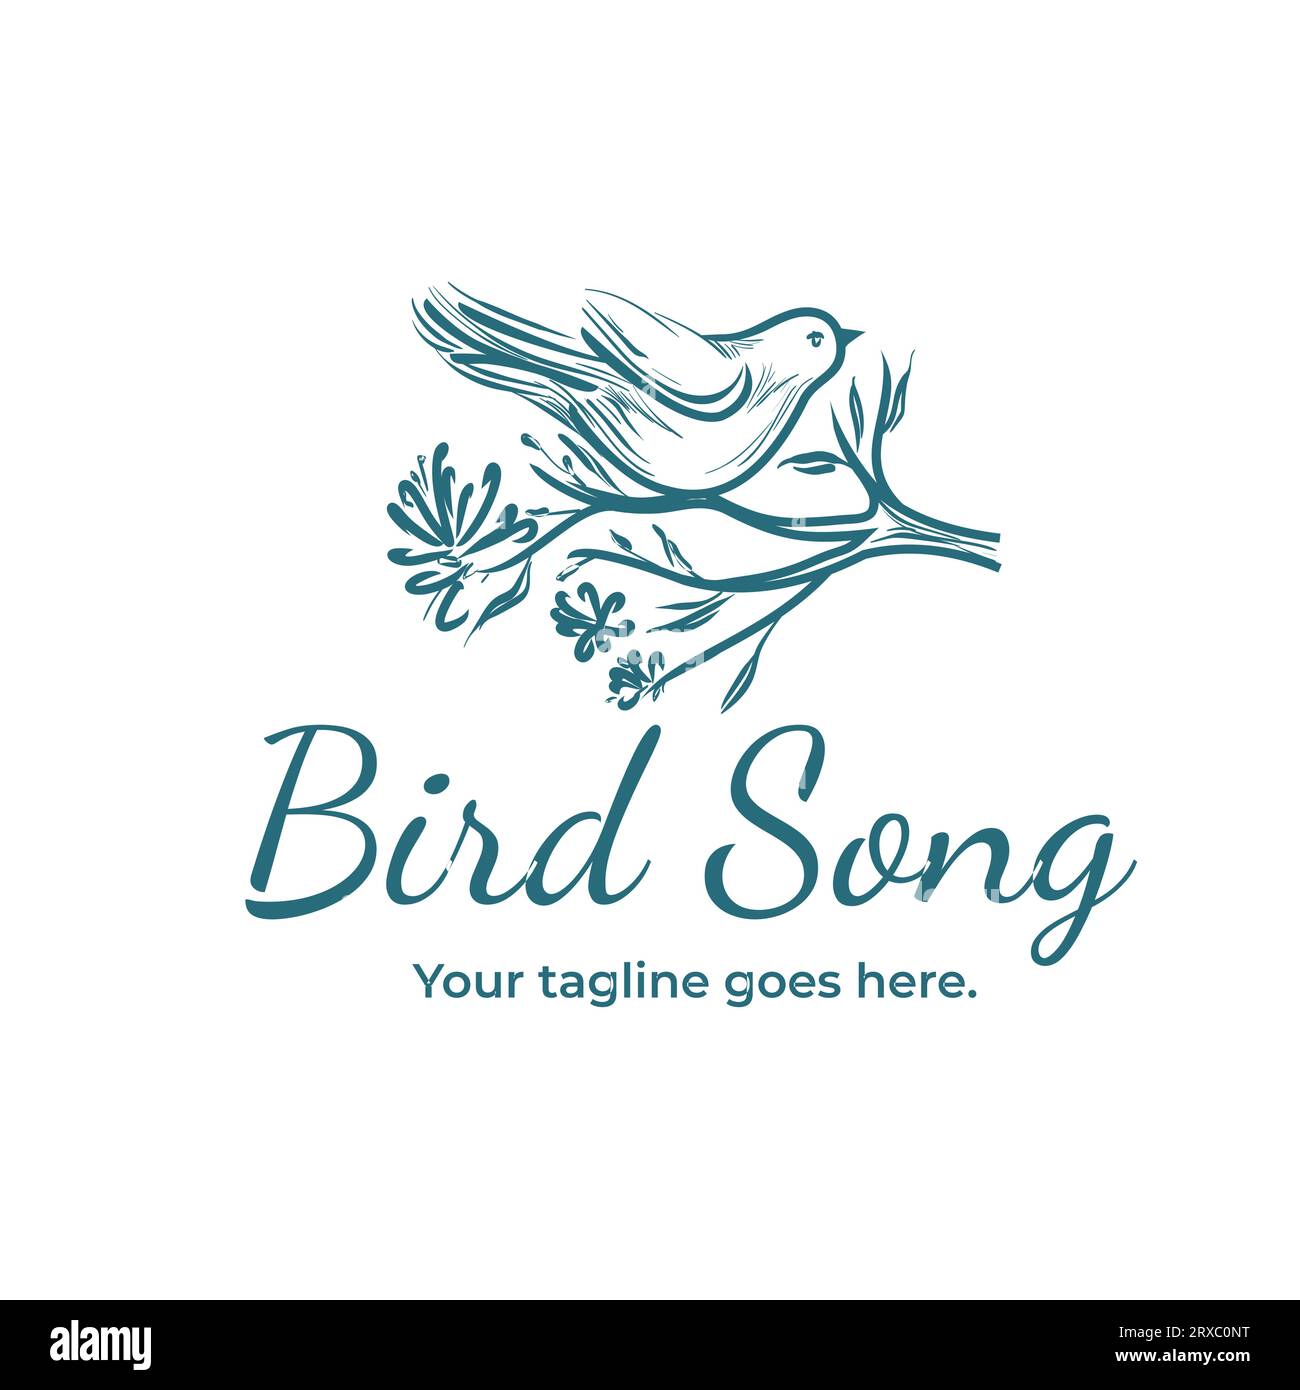 Immagine dell'uccello con logo Clean. Uccello volante. Bellissime ali. Illustrazione Vettoriale